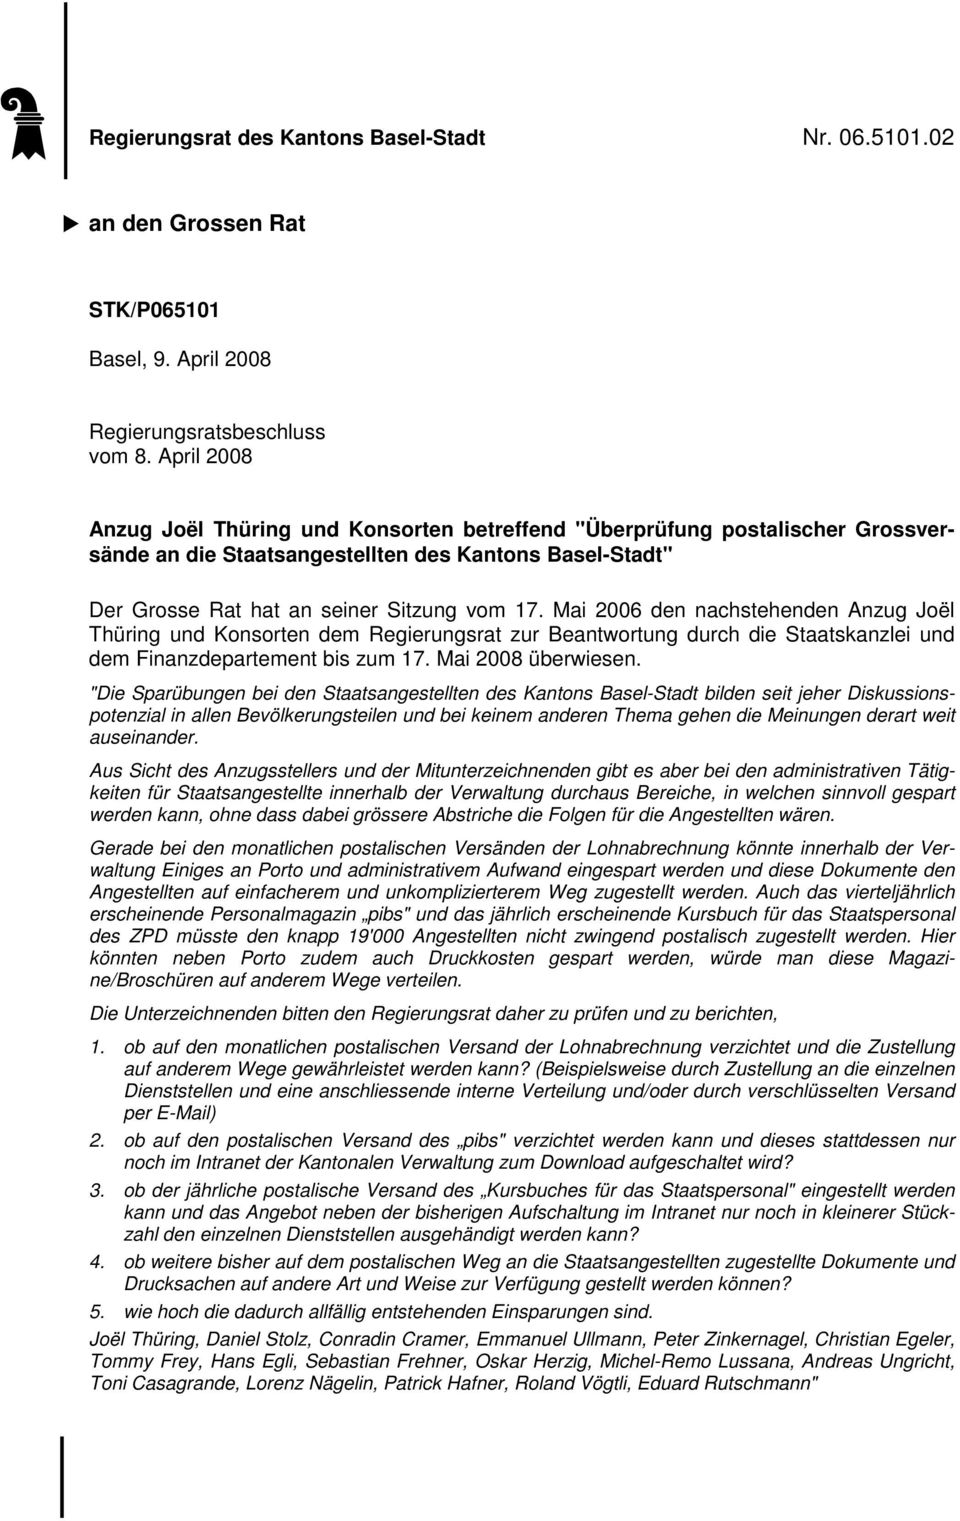 Mai 2006 den nachstehenden Anzug Joël Thüring und Konsorten dem Regierungsrat zur Beantwortung durch die Staatskanzlei und dem Finanzdepartement bis zum 17. Mai 2008 überwiesen.